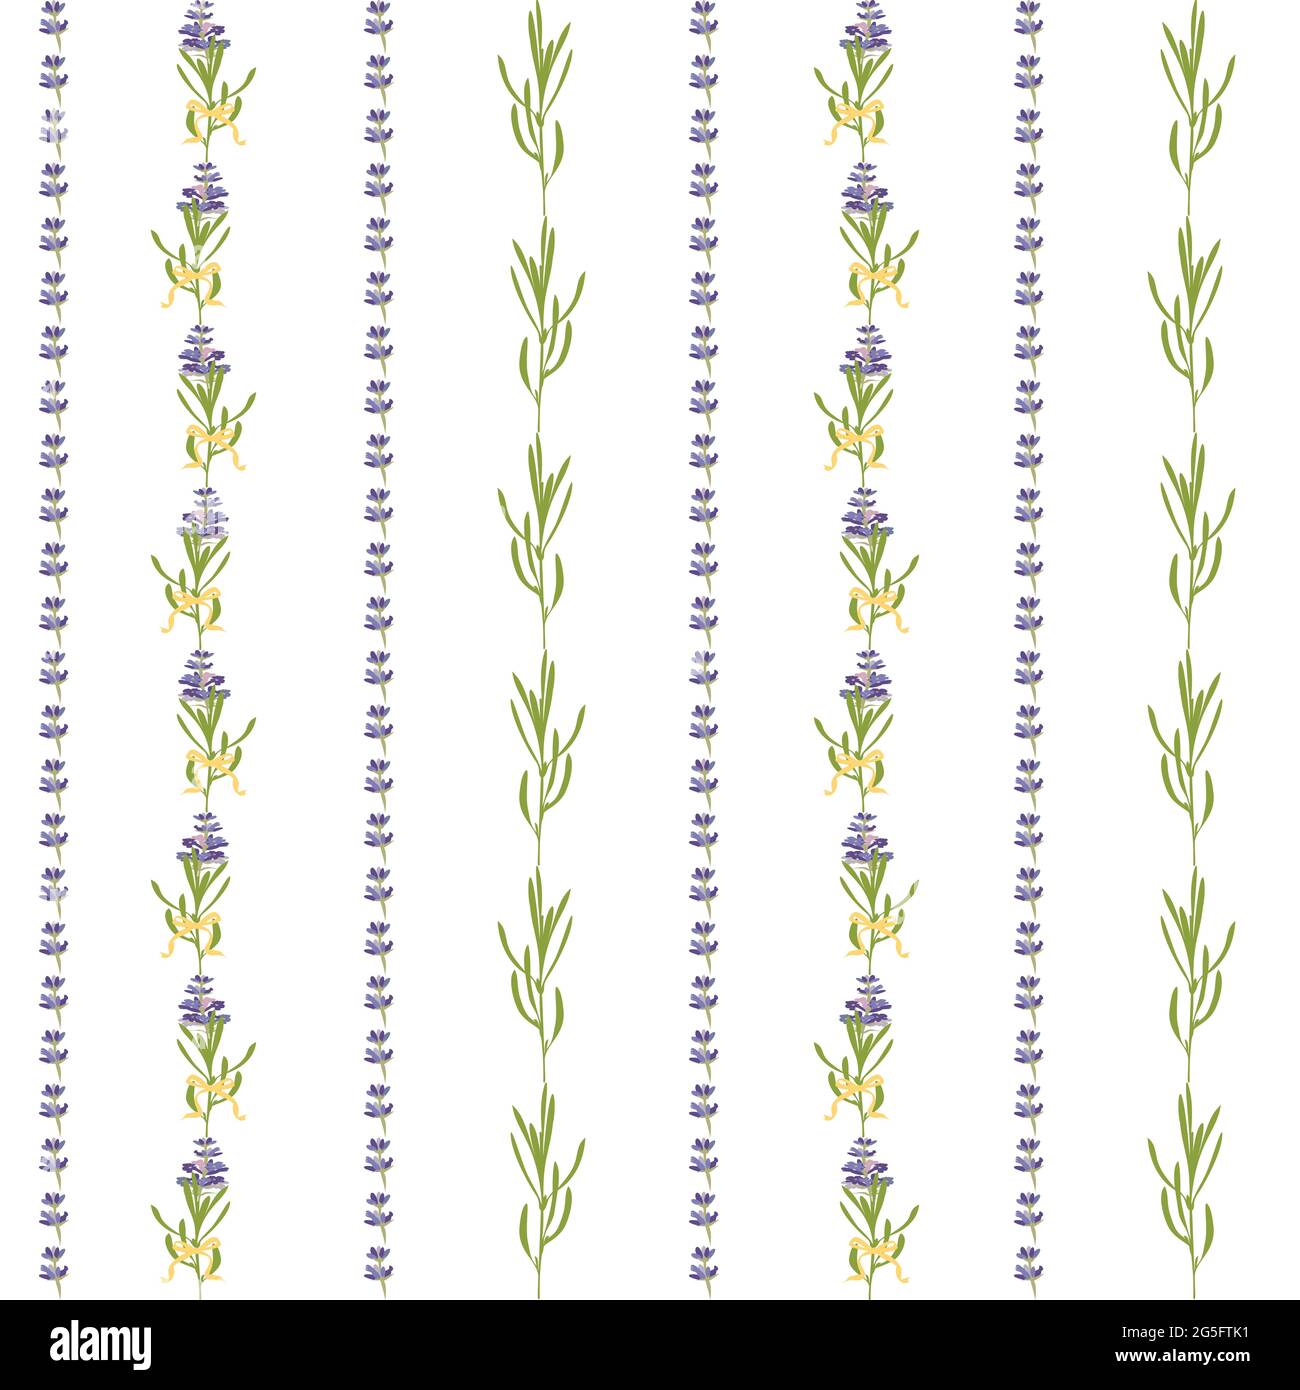 Nahtloses Muster mit violettem Lavendel schöne Blumenvorlage in flachem Aquarell-Stil isoliert auf weißem Hintergrund für Hochzeitskarte, Einladung Stock Vektor